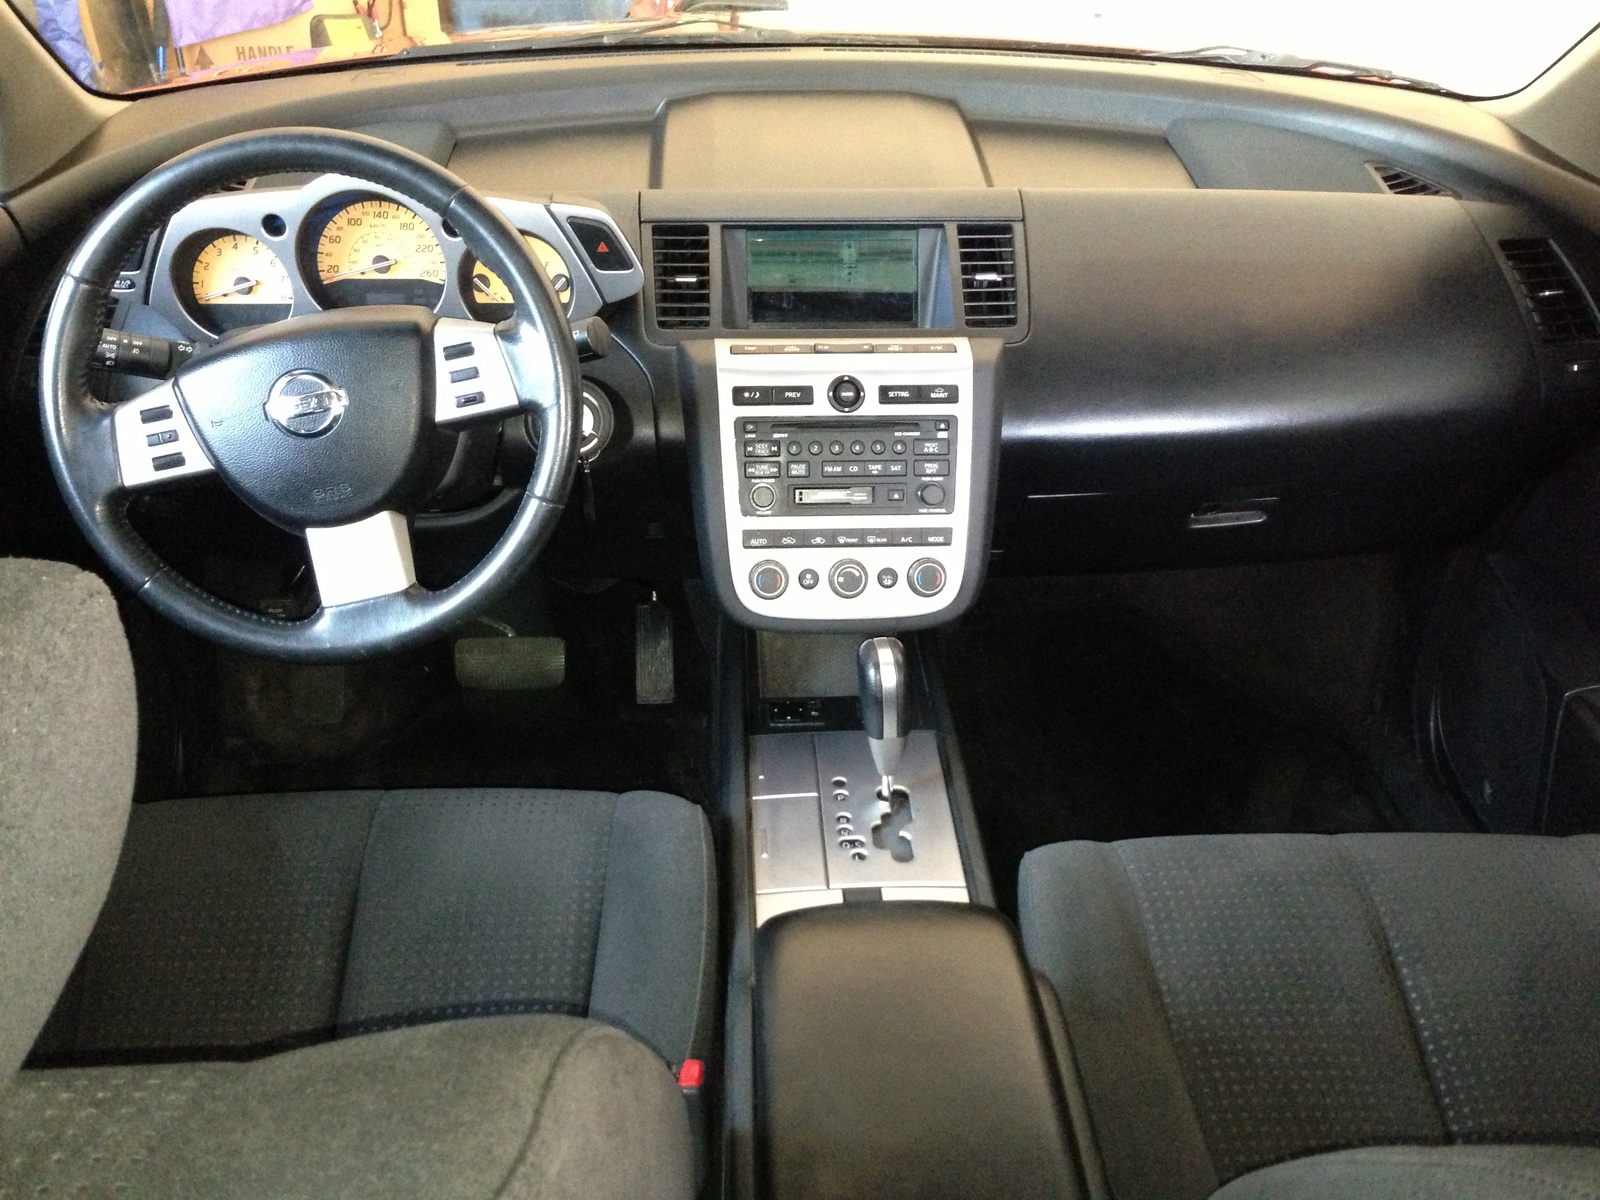 2004 Nissan murano interior dimensions #3